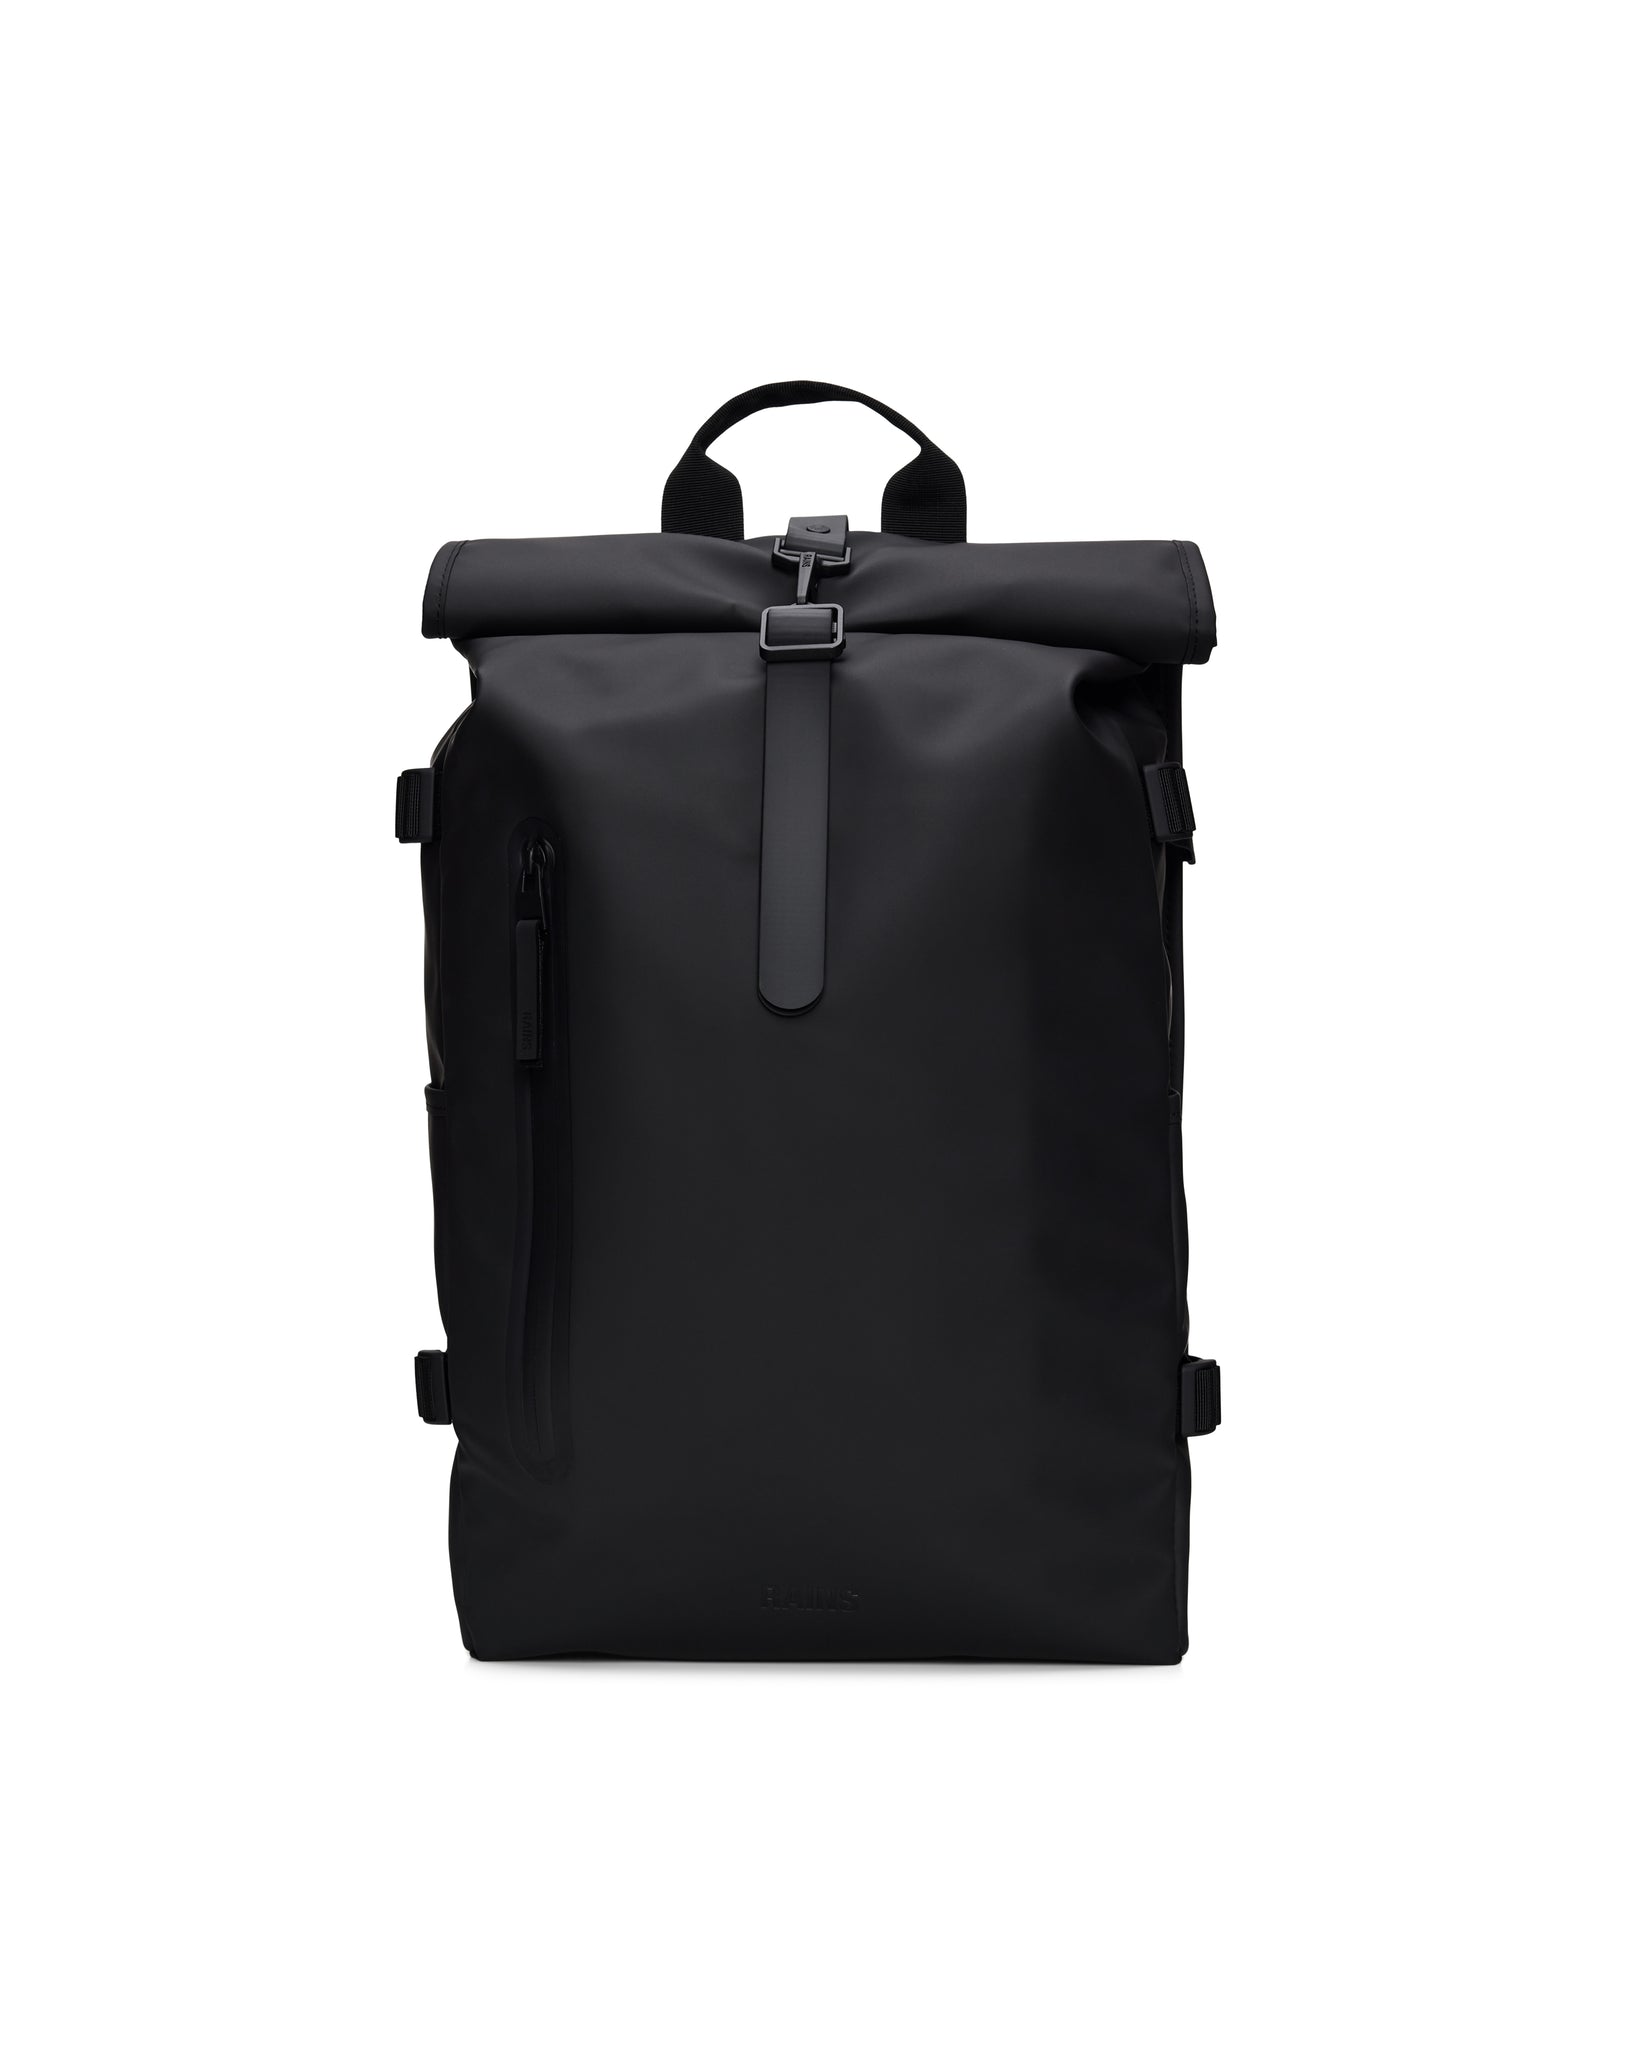 Rolltop Rucksack Large Backpack - Black